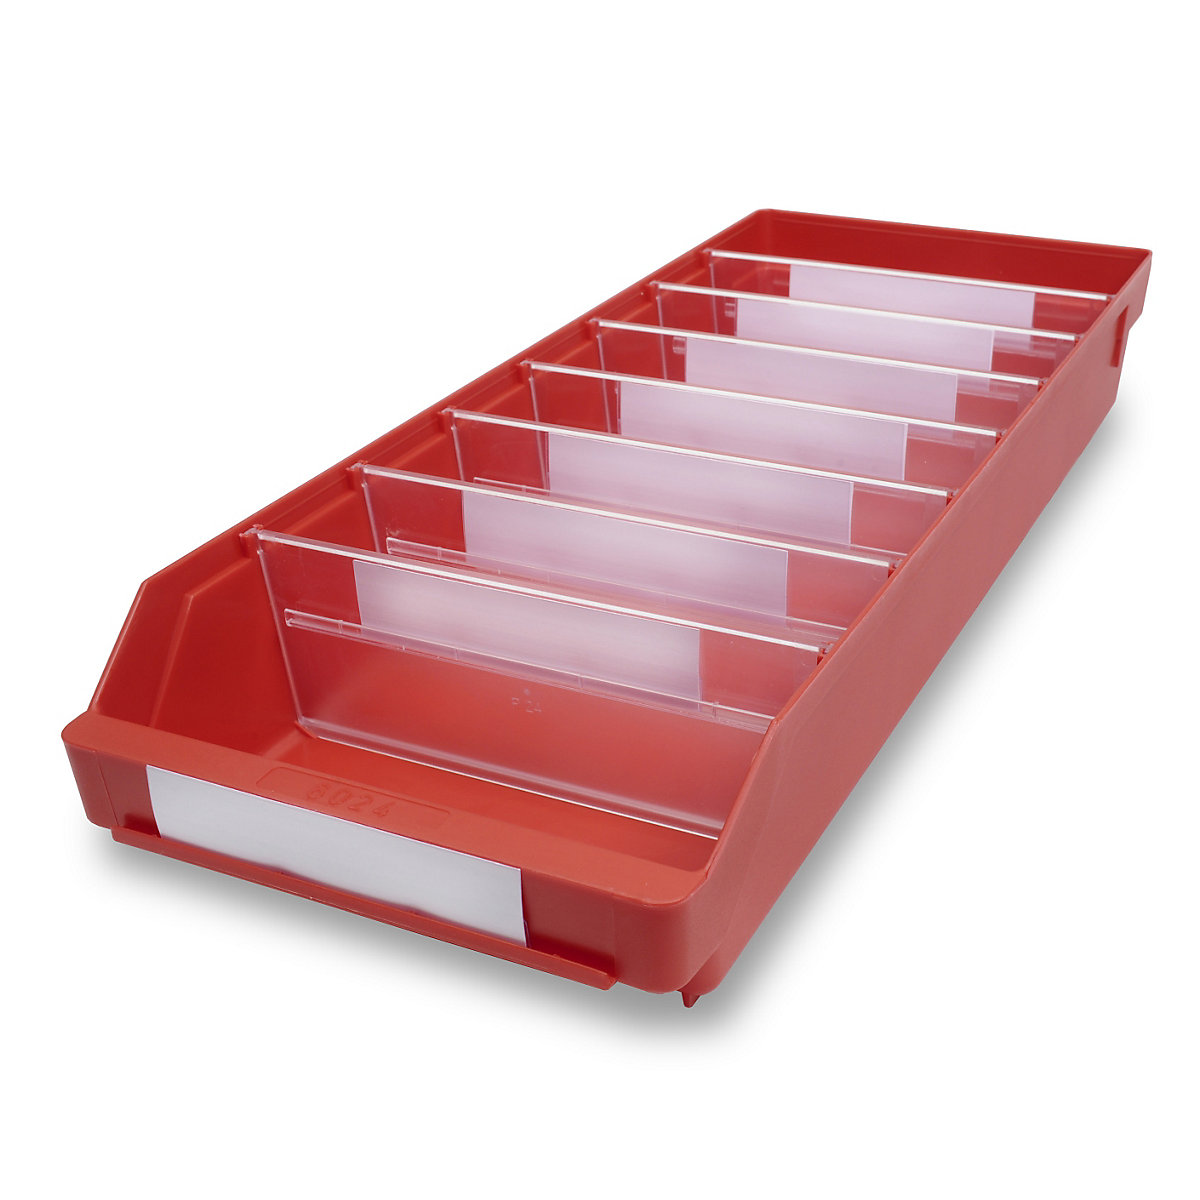 STEMO Regalkasten aus hochschlagfestem Polypropylen, rot, LxBxH 600 x 240 x 95 mm, VE 15 Stk